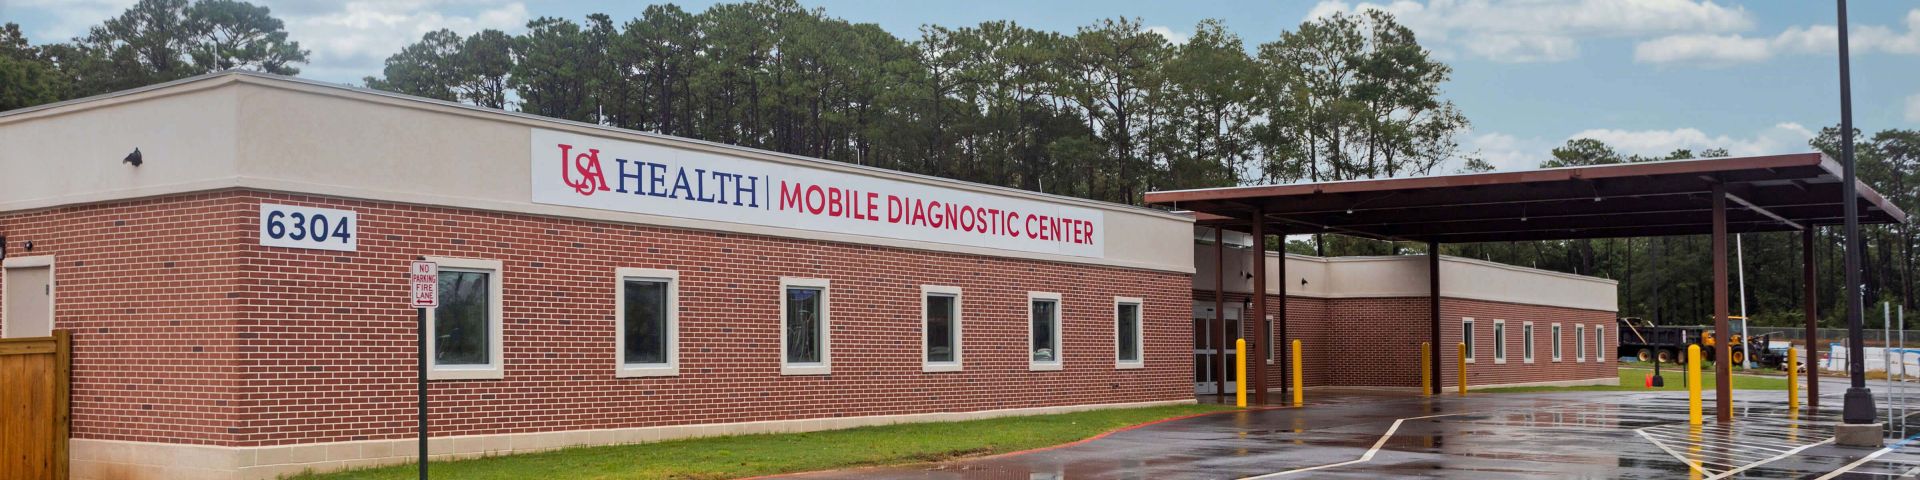 USA Mobile Diagnostic Center